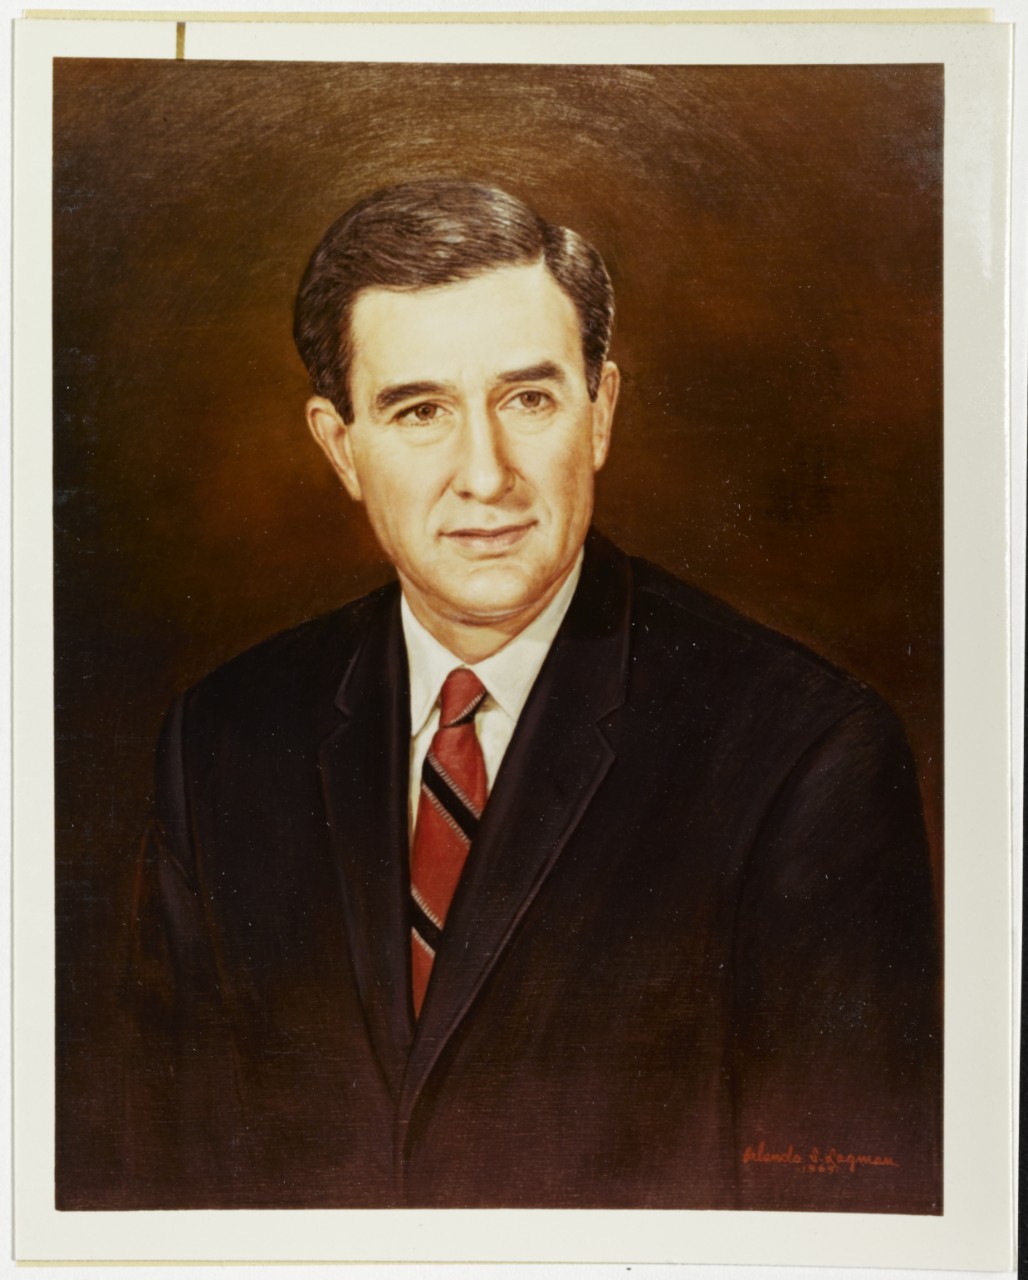 John H. Chaffee, Secretary of the Navy, January 1969-May 1972